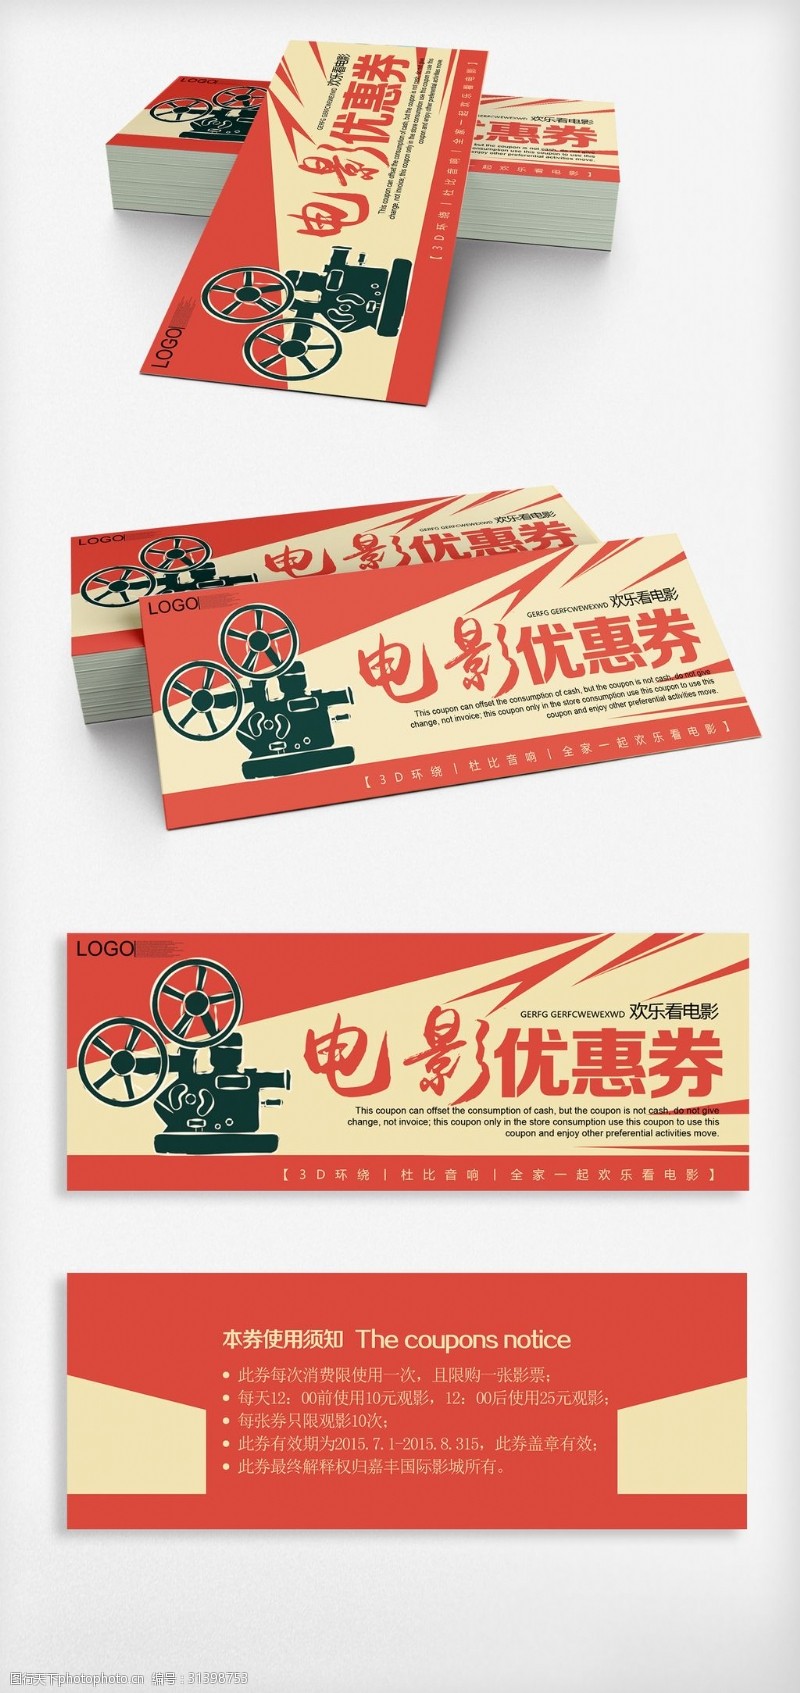 2018红色复古风格观影券设计